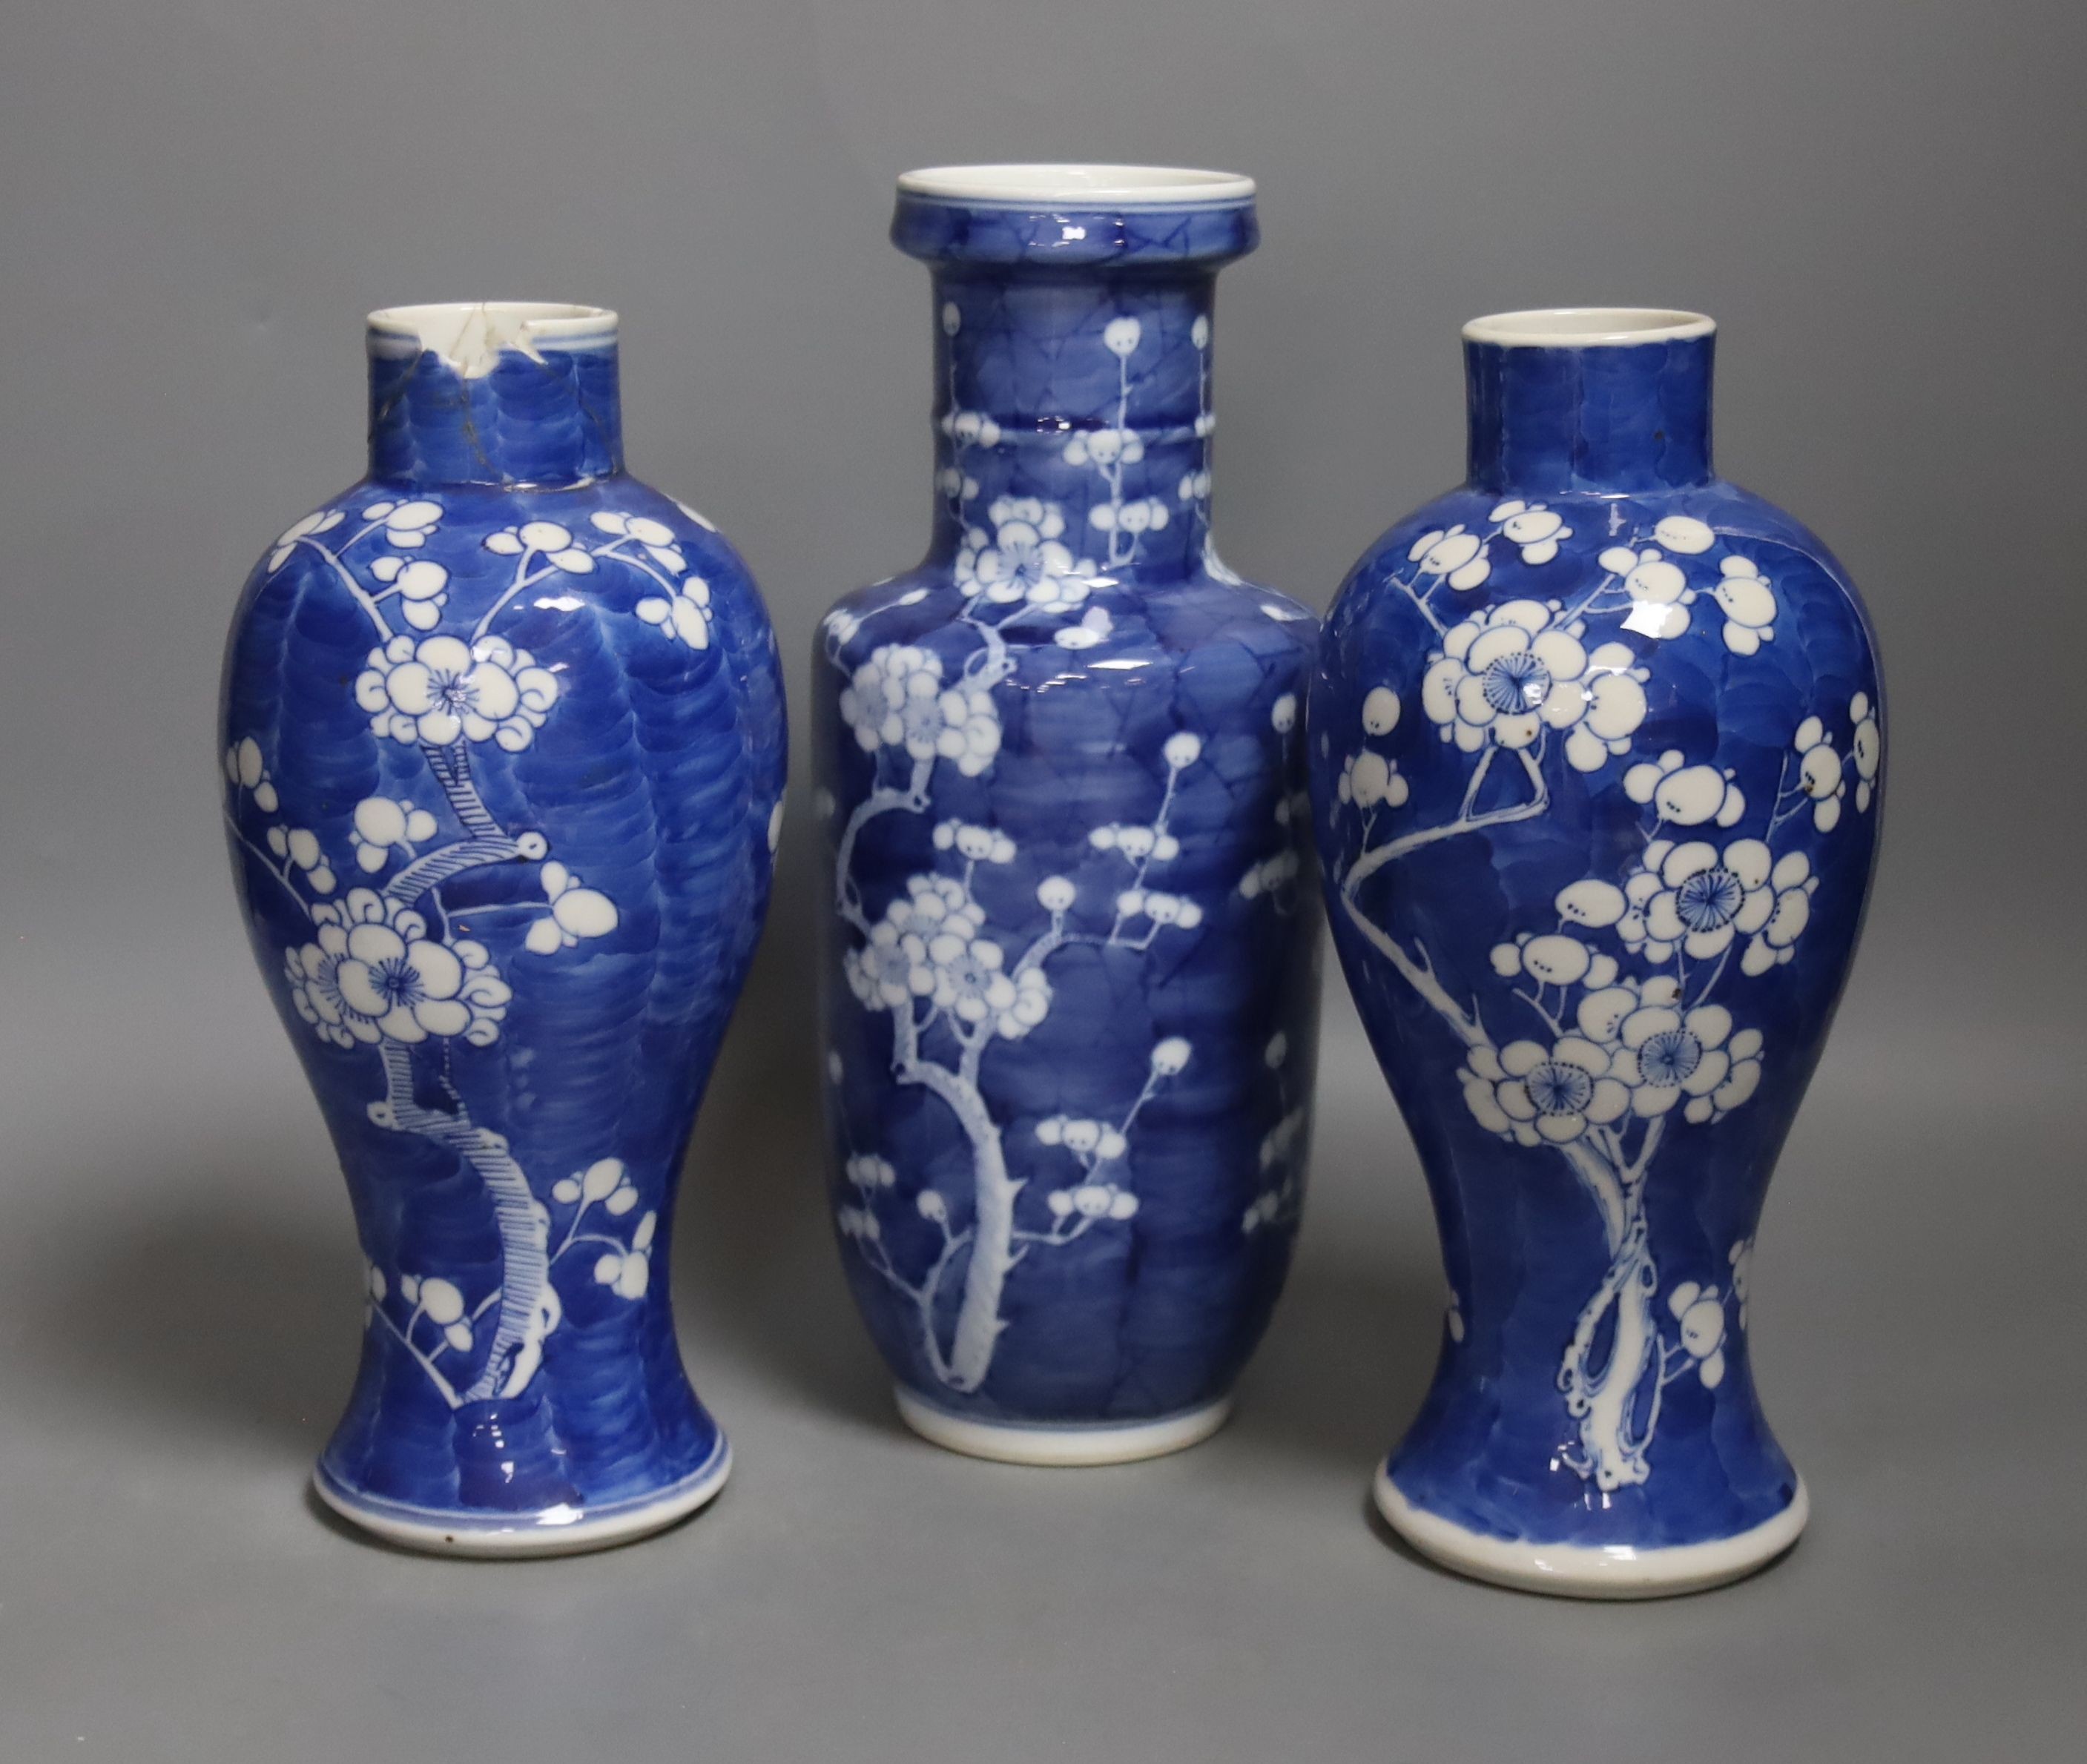 Three Chinese blue and white prunus vases. 25.5cm